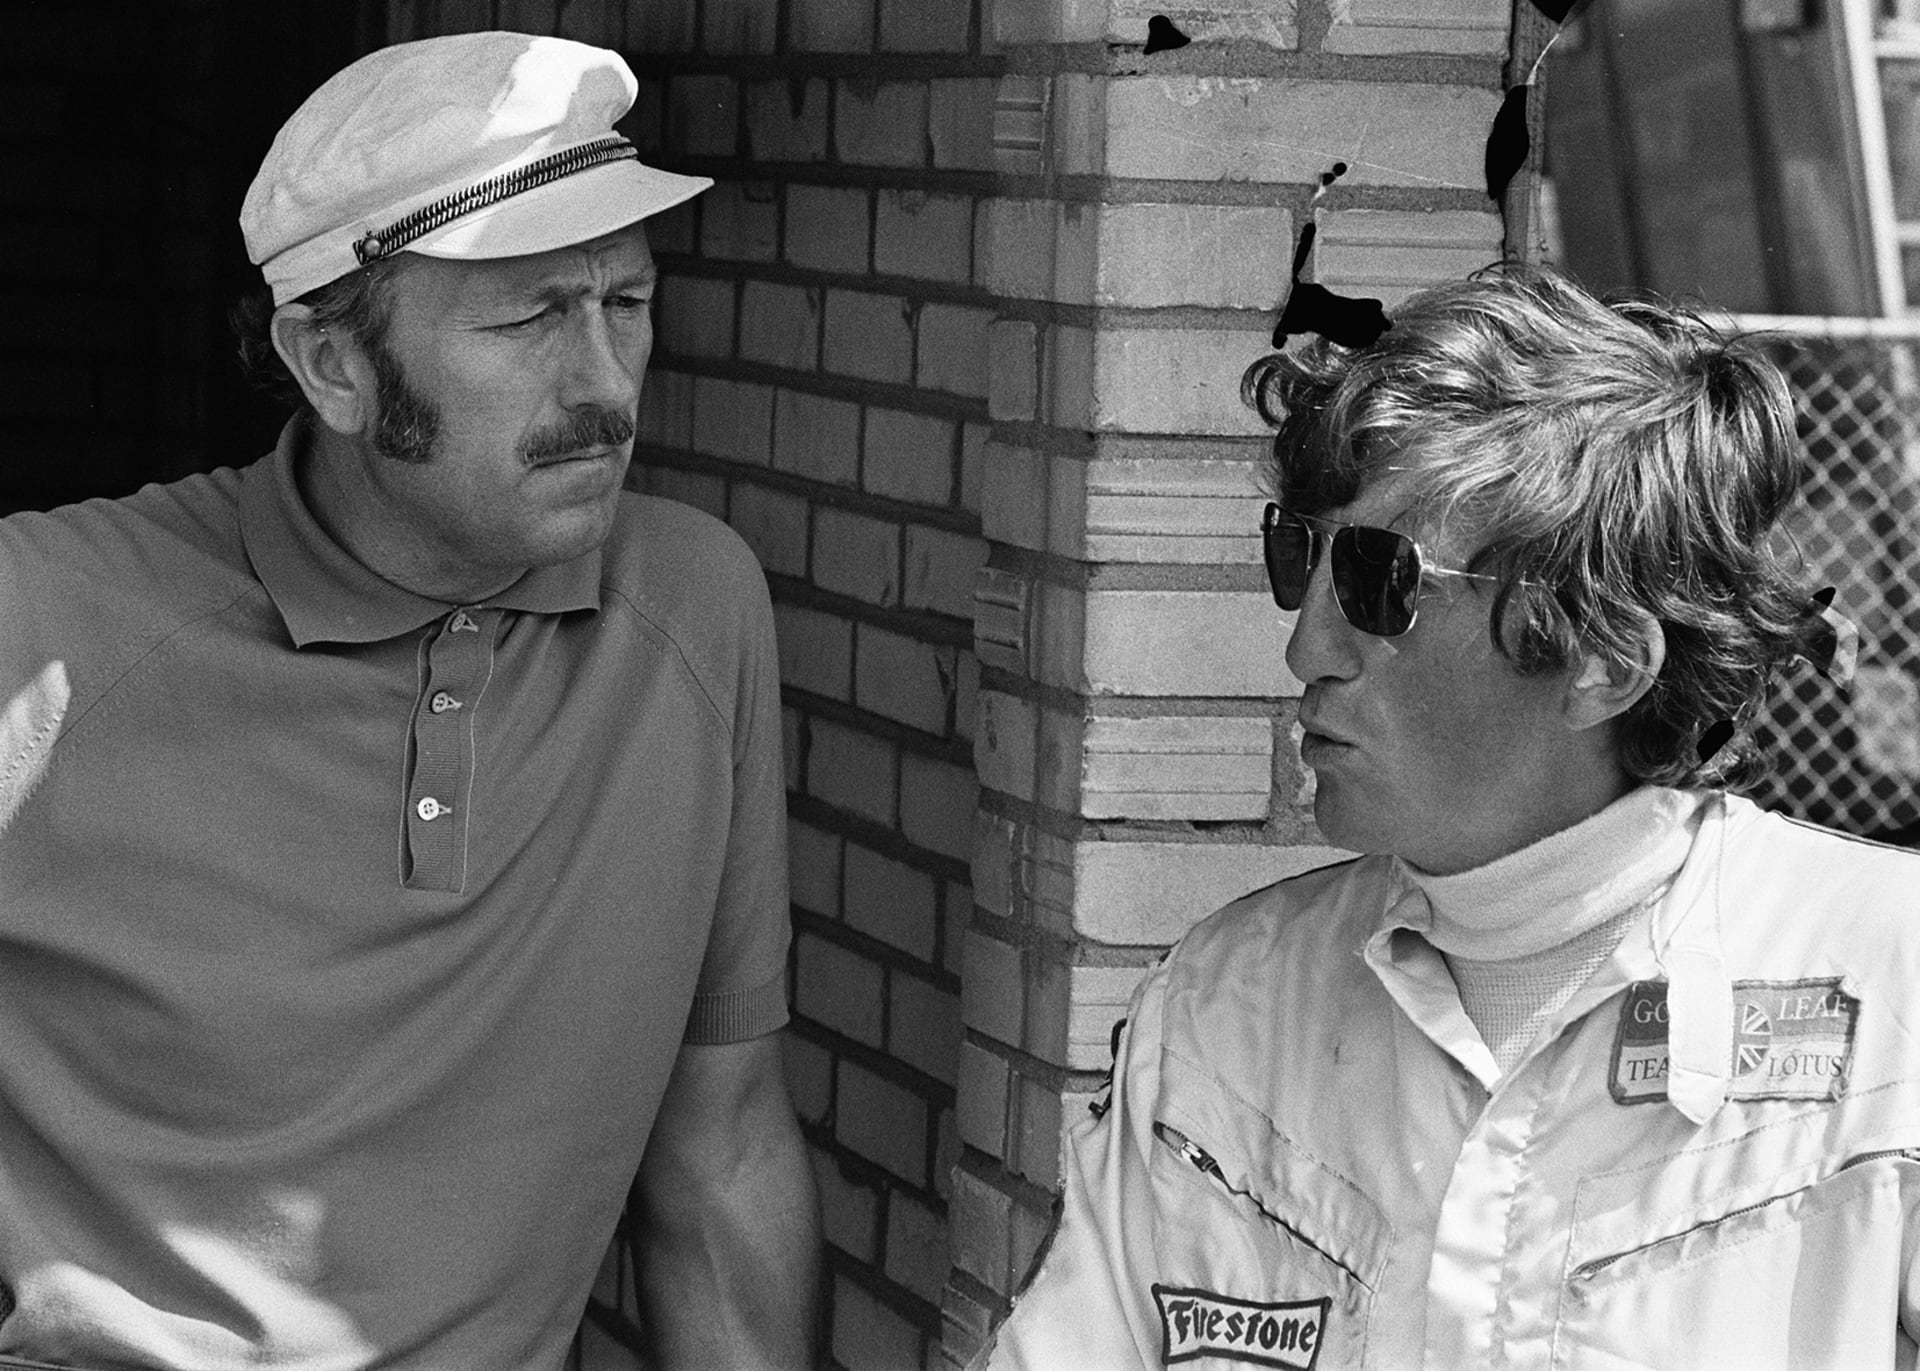 Rindtovy napjaté vztahy s Colinem Chapmanem, zakladatelem společnosti Lotus Cars, konstruktérem i šéfem týmu v jedné osobě, byly veřejným tajemstvím.